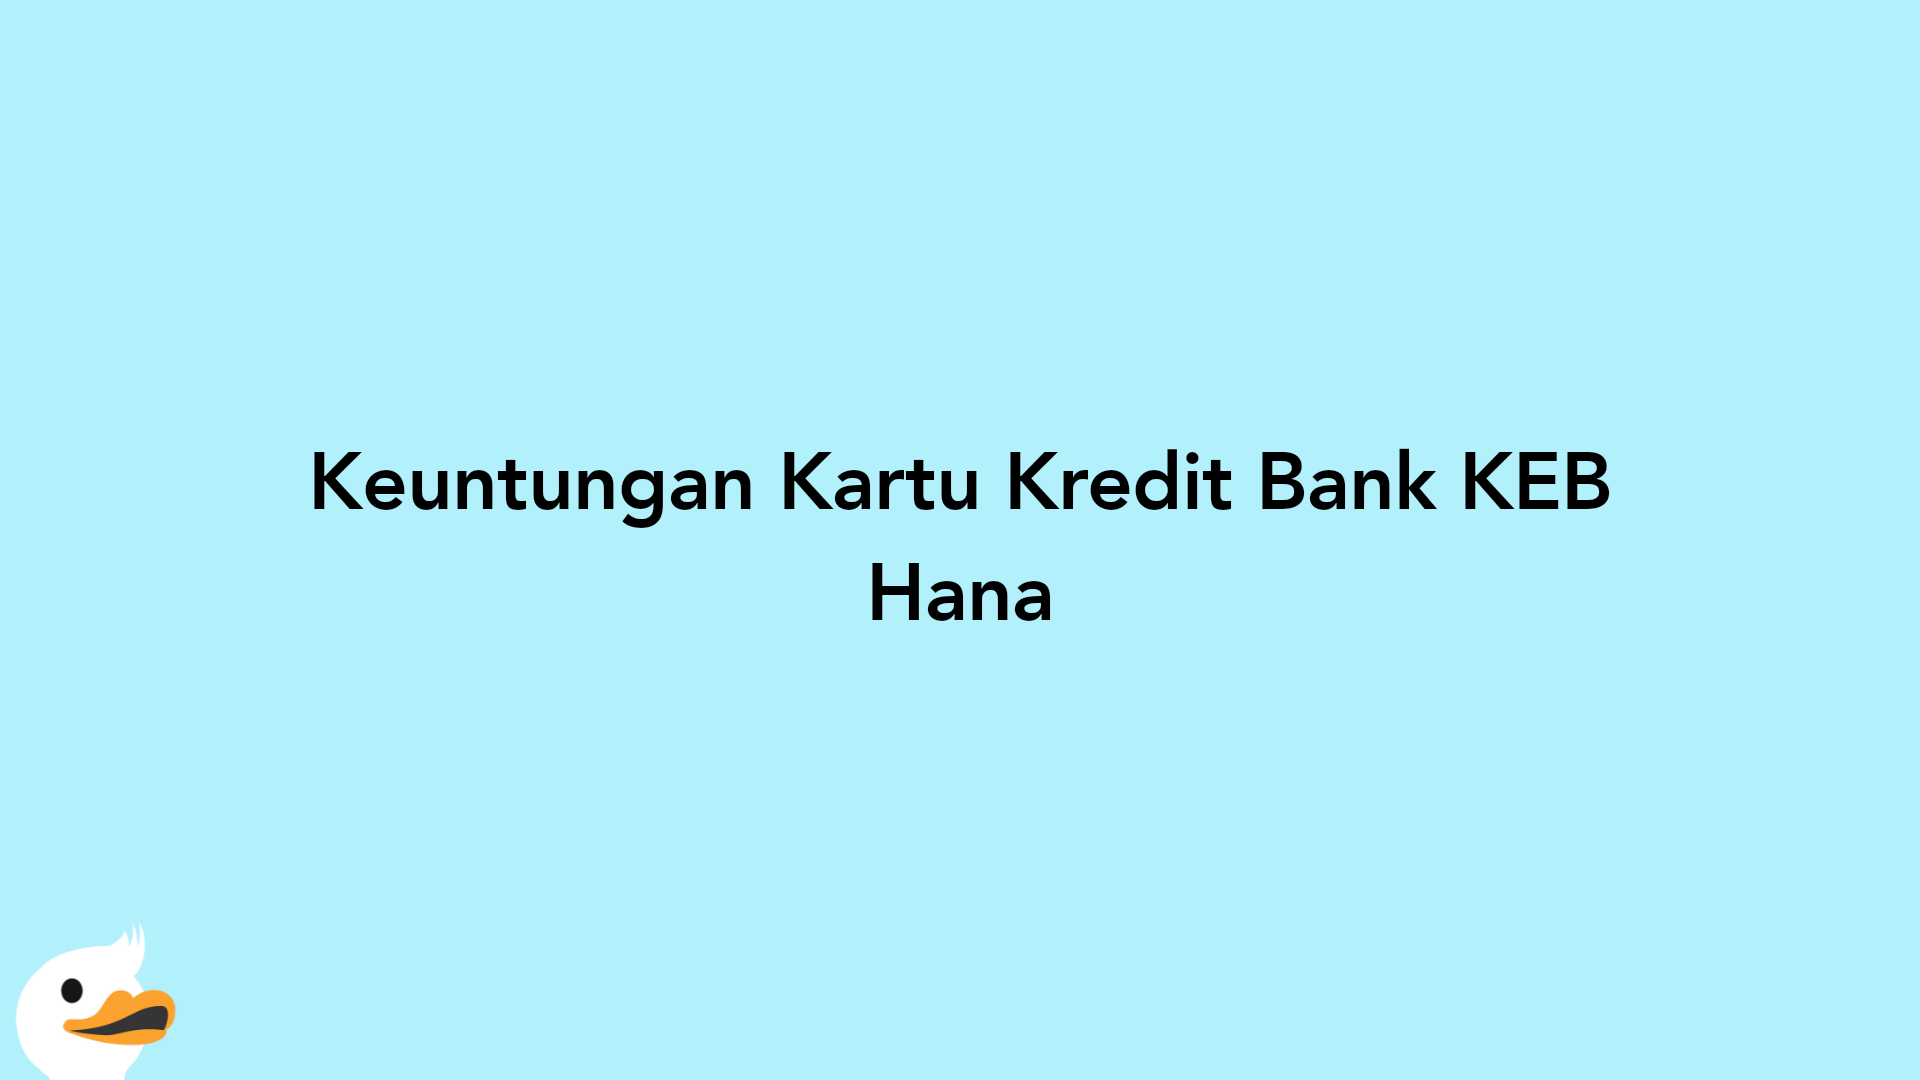 Keuntungan Kartu Kredit Bank KEB Hana